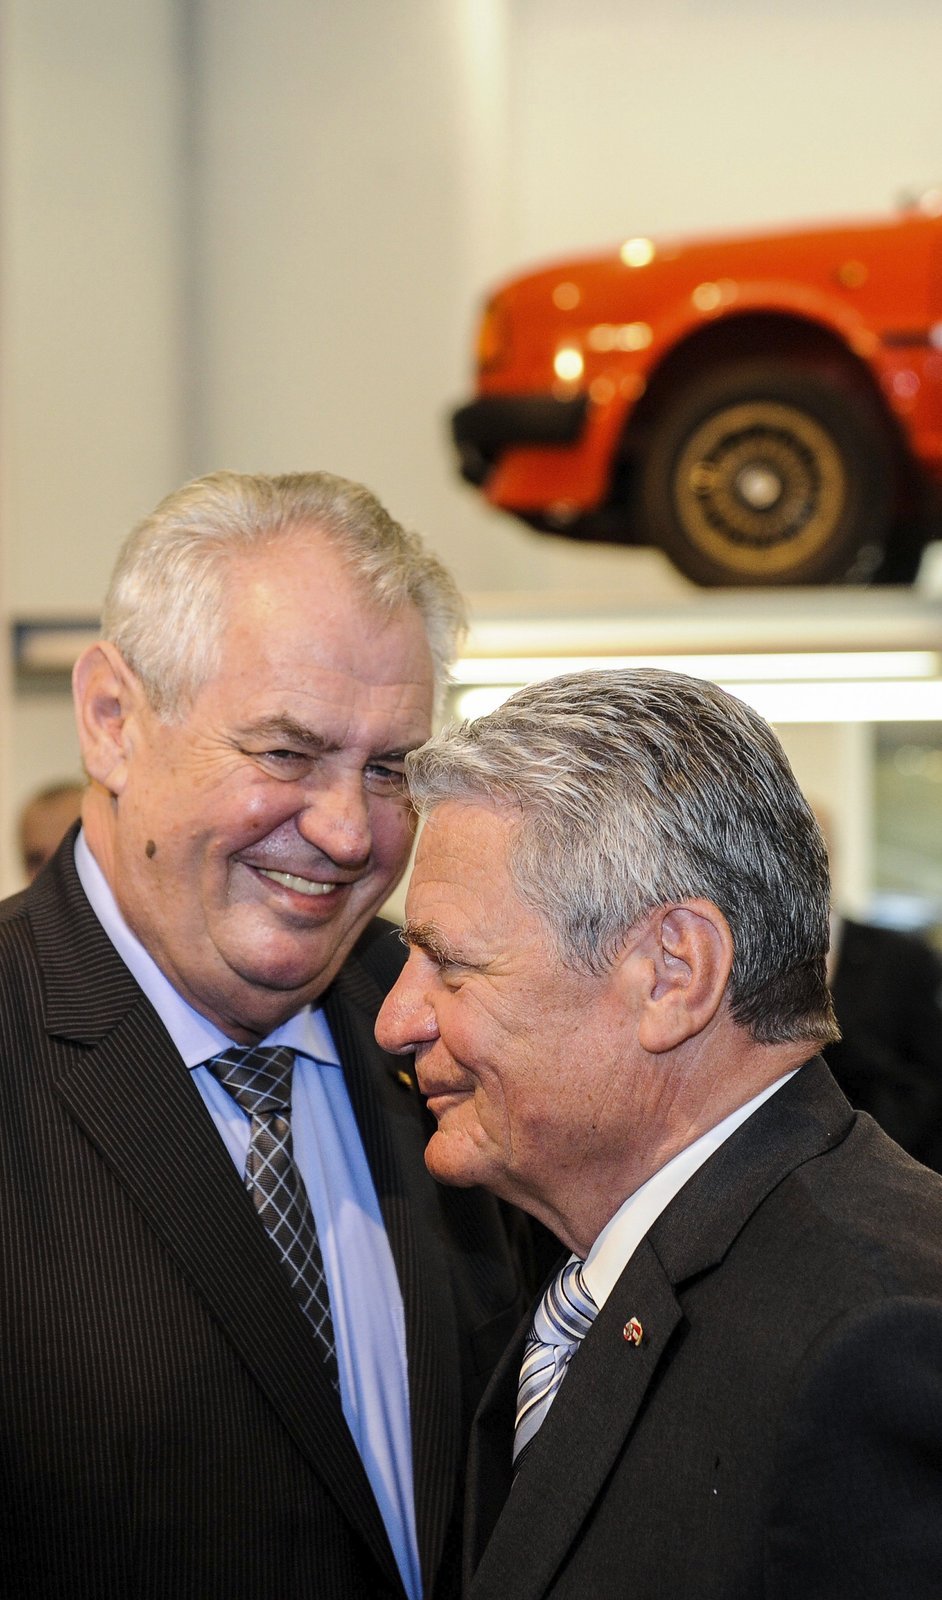 Vystavené exponáty v automobilce Škoda Auto zaujaly českého i německého prezidenta